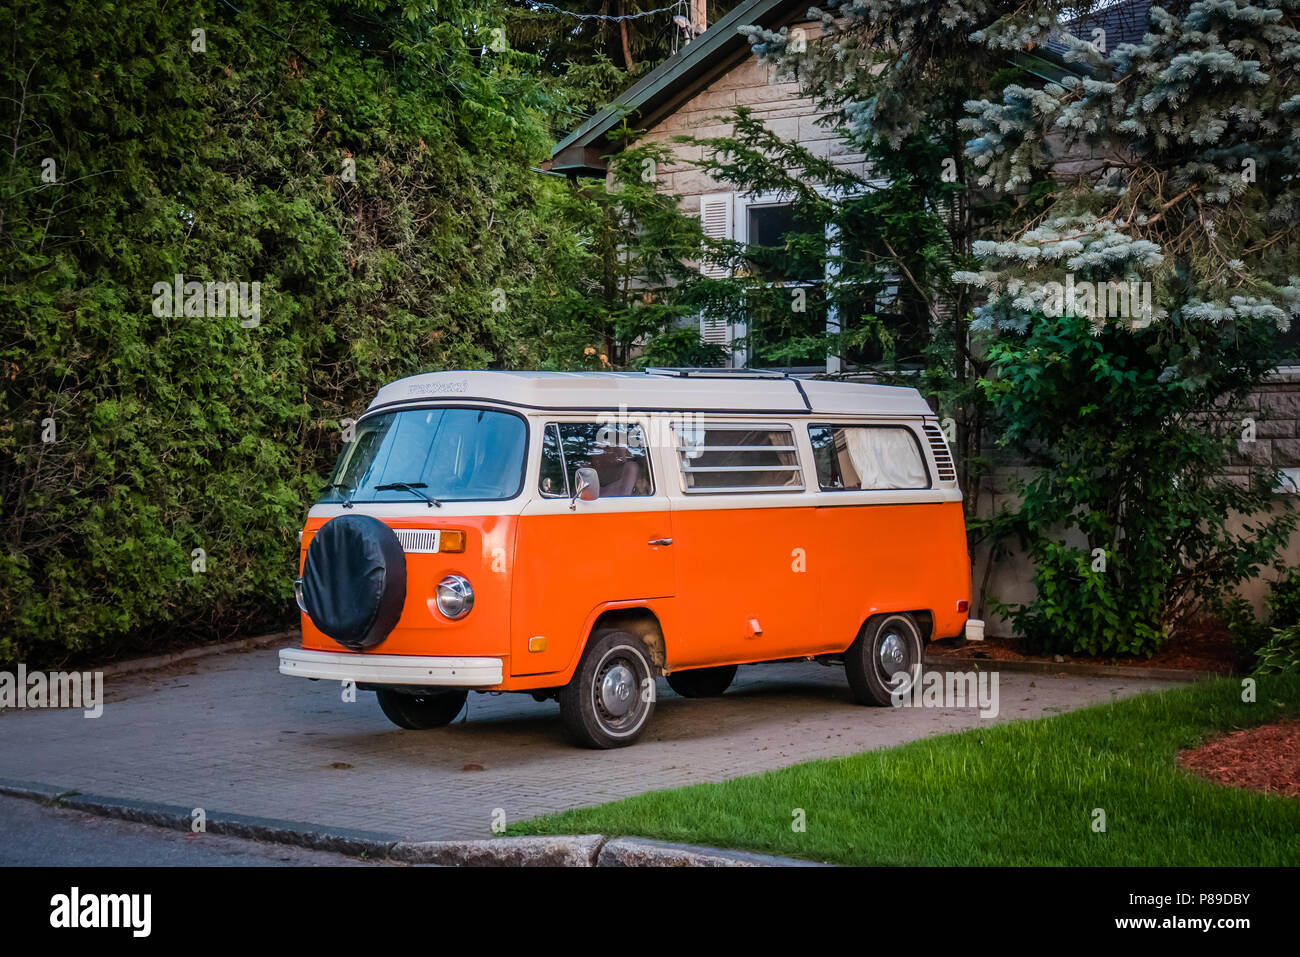 Orange volkswagen type 2 camper van hi-res stock photography and images -  Alamy